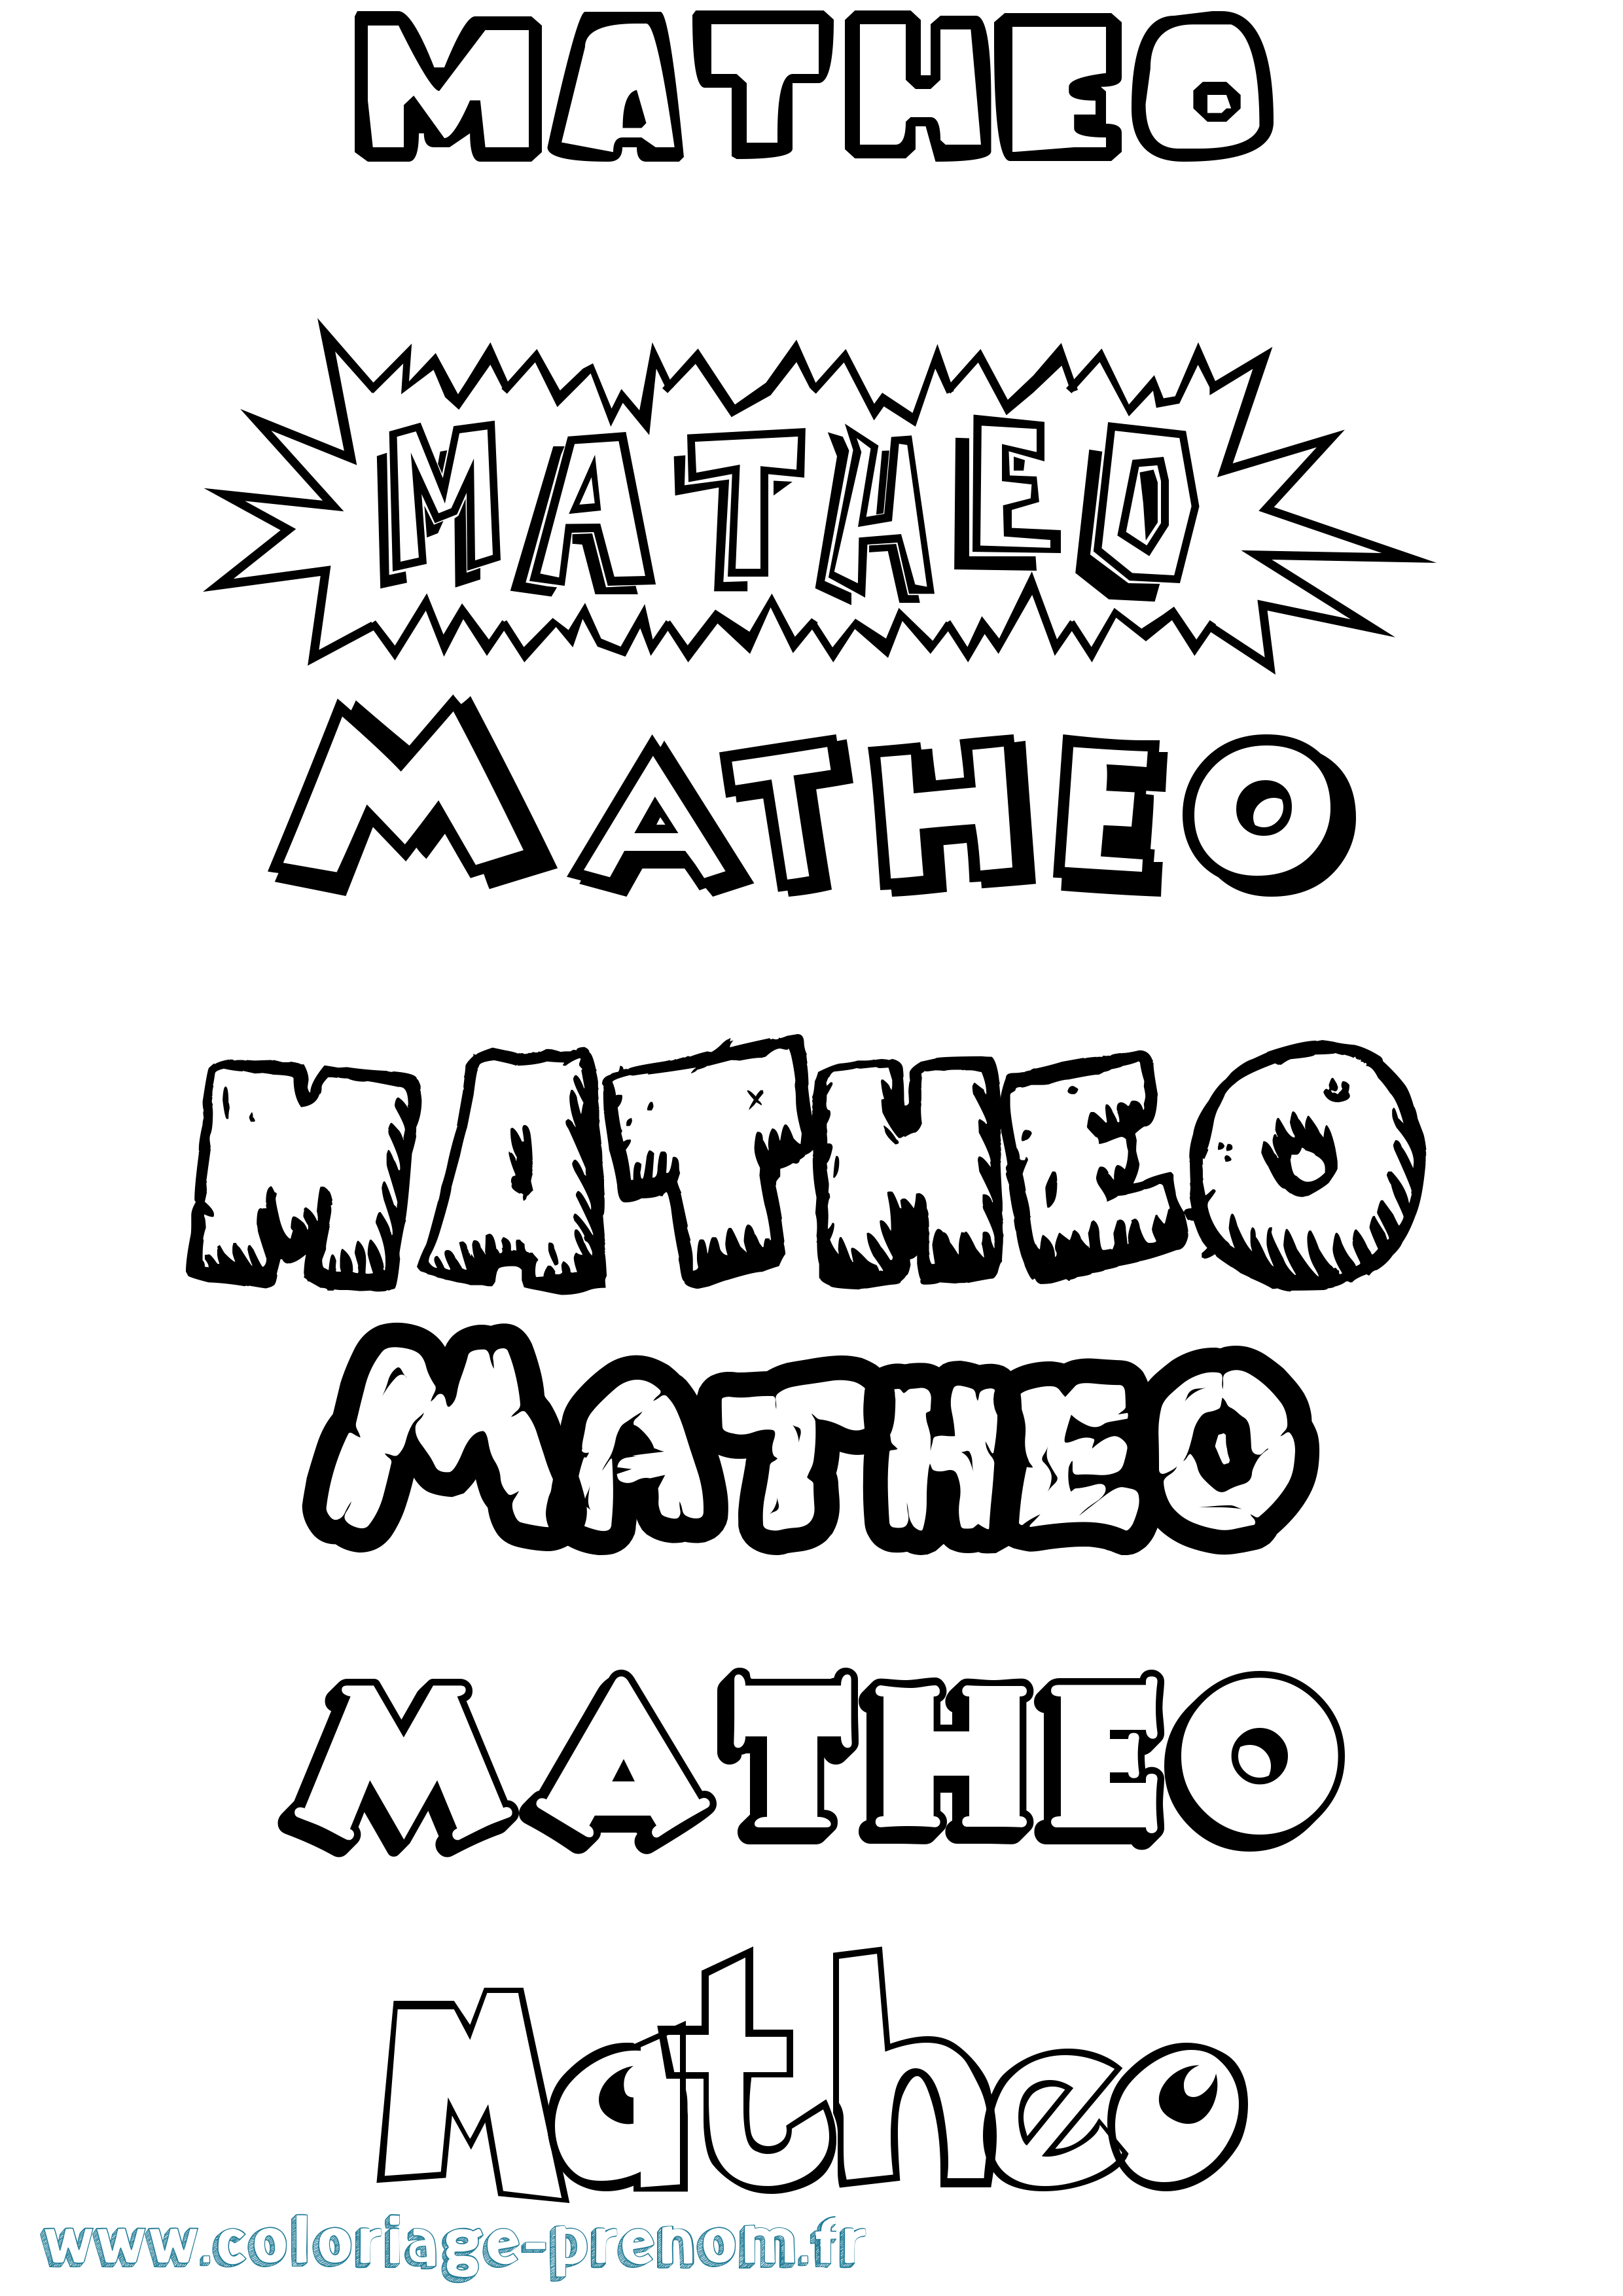 Coloriage prénom Matheo